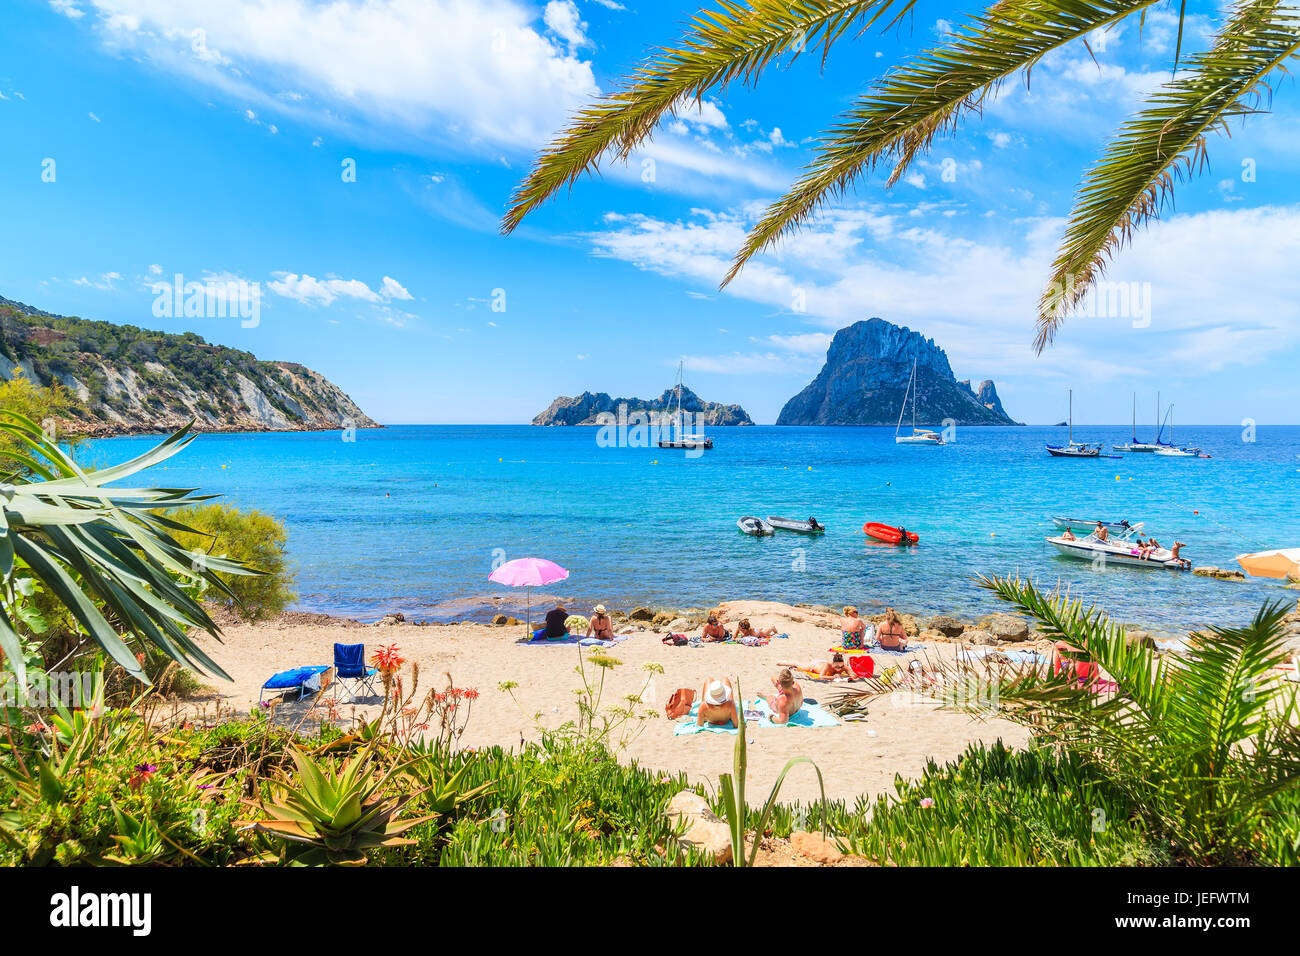 Insel IBIZA, Spanien - 18. Mai 2017: Blick auf den idyllischen Strand von Cala d ' Hort Wih Palme Blätter im Vordergrund, Insel Ibiza, Spanien. Stockfoto